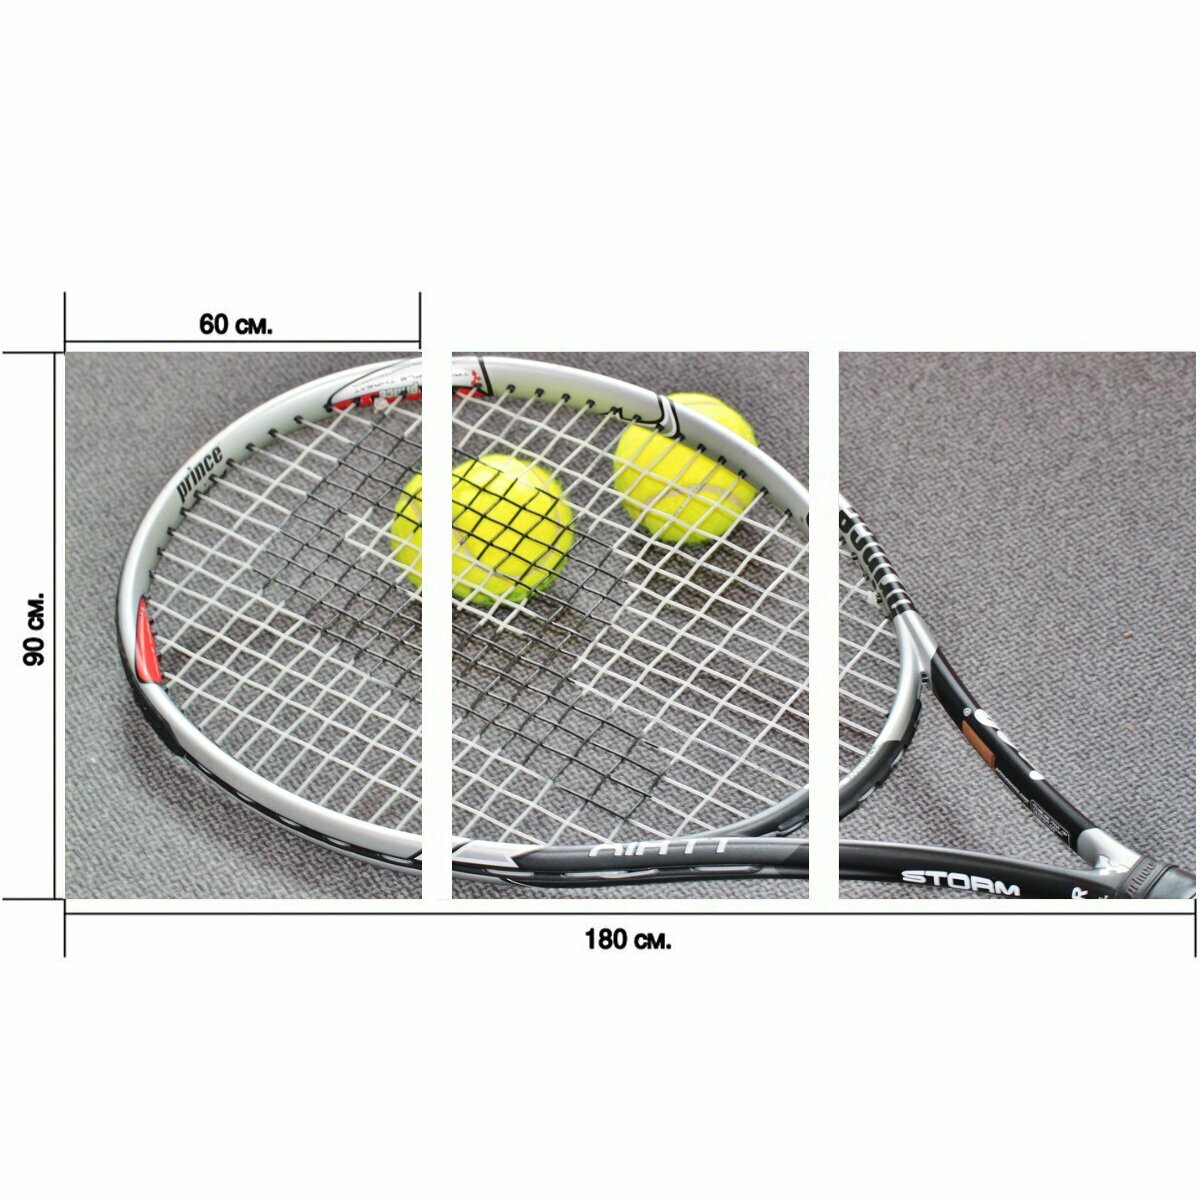 Модульный постер "Теннис, теннисная ракетка, спорт теннис" 180 x 90 см. для интерьера